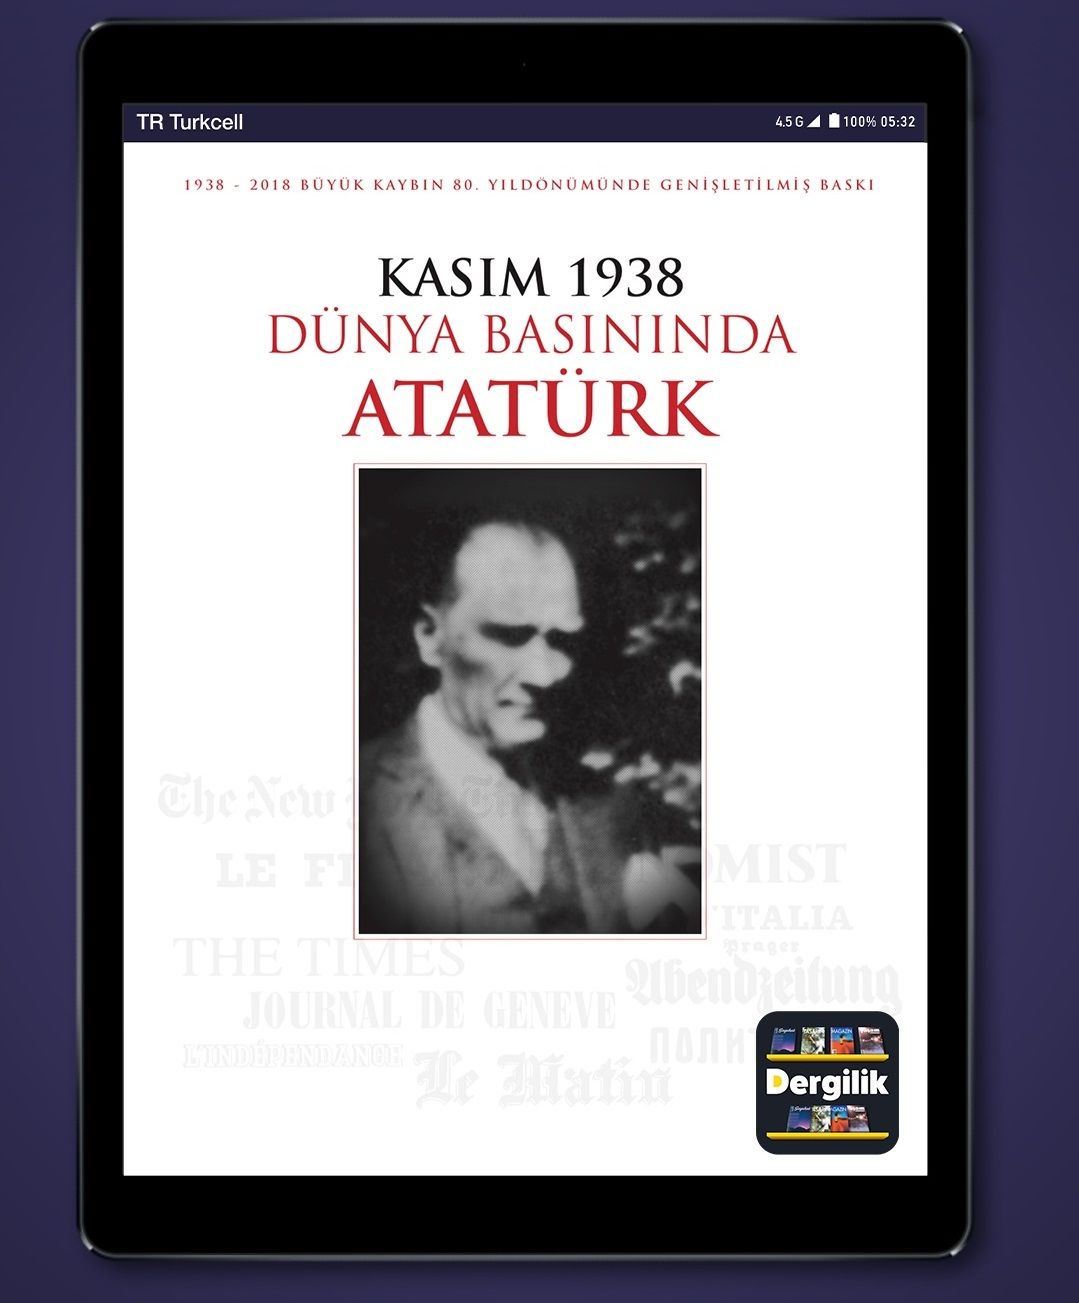 Dünya Basınında Atatürk kitabı, 10 Kasım'da bedava yayınlanacak